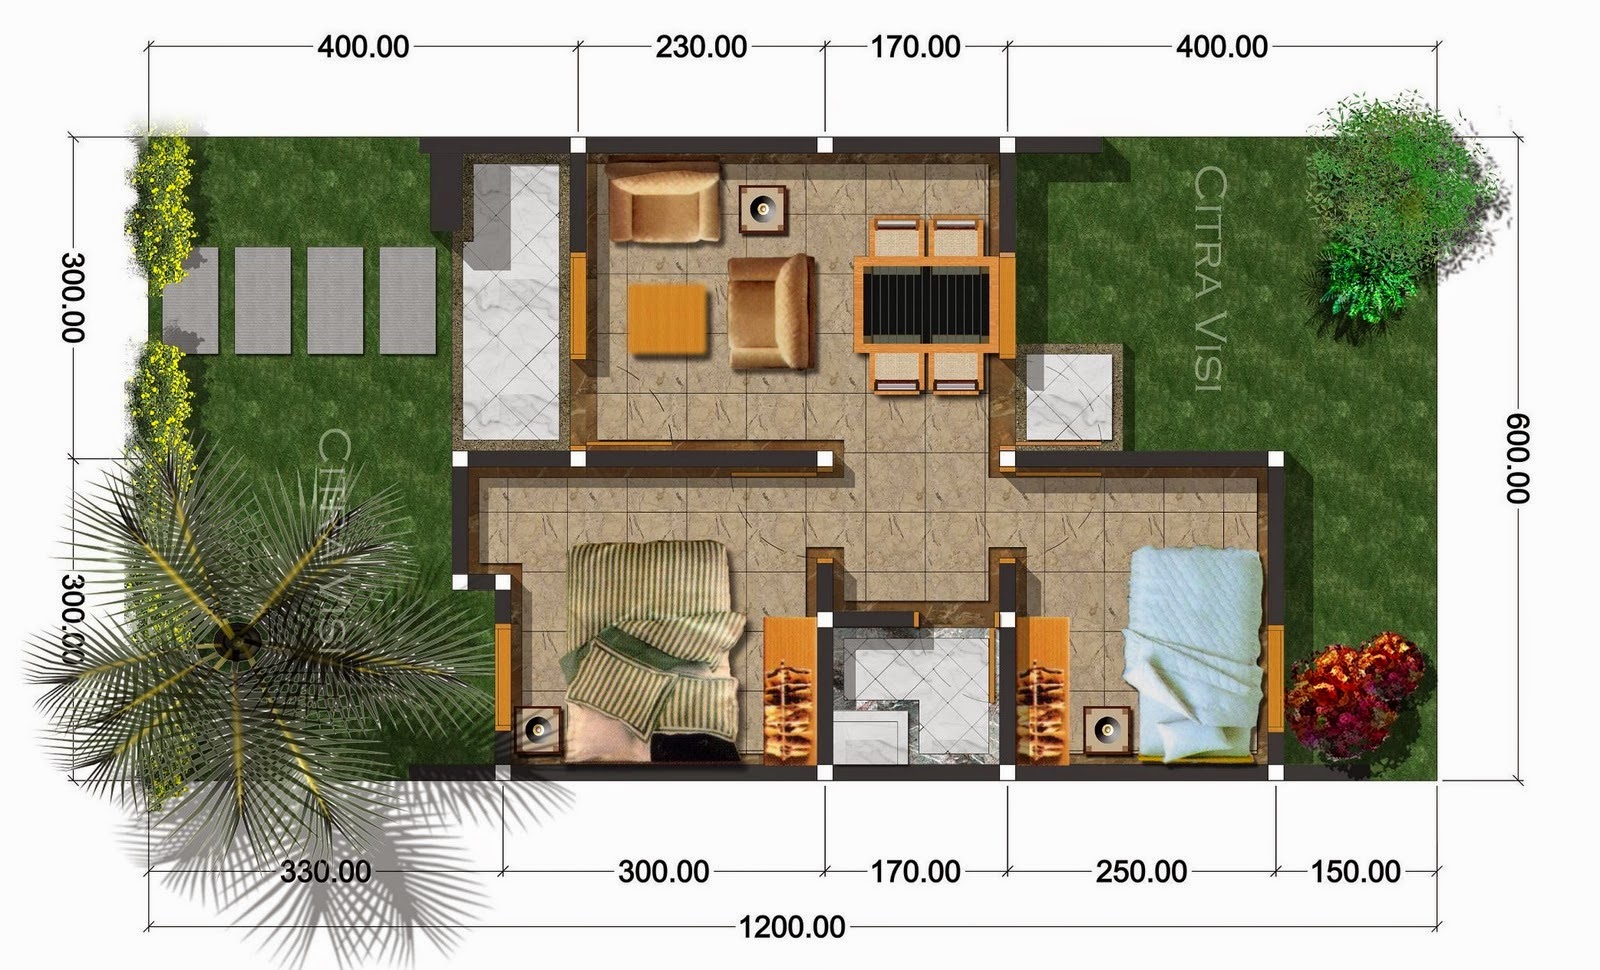 Desain Rumah Minimalis 2 Lantai Type 36 90 Foto Desain Rumah Terbaru